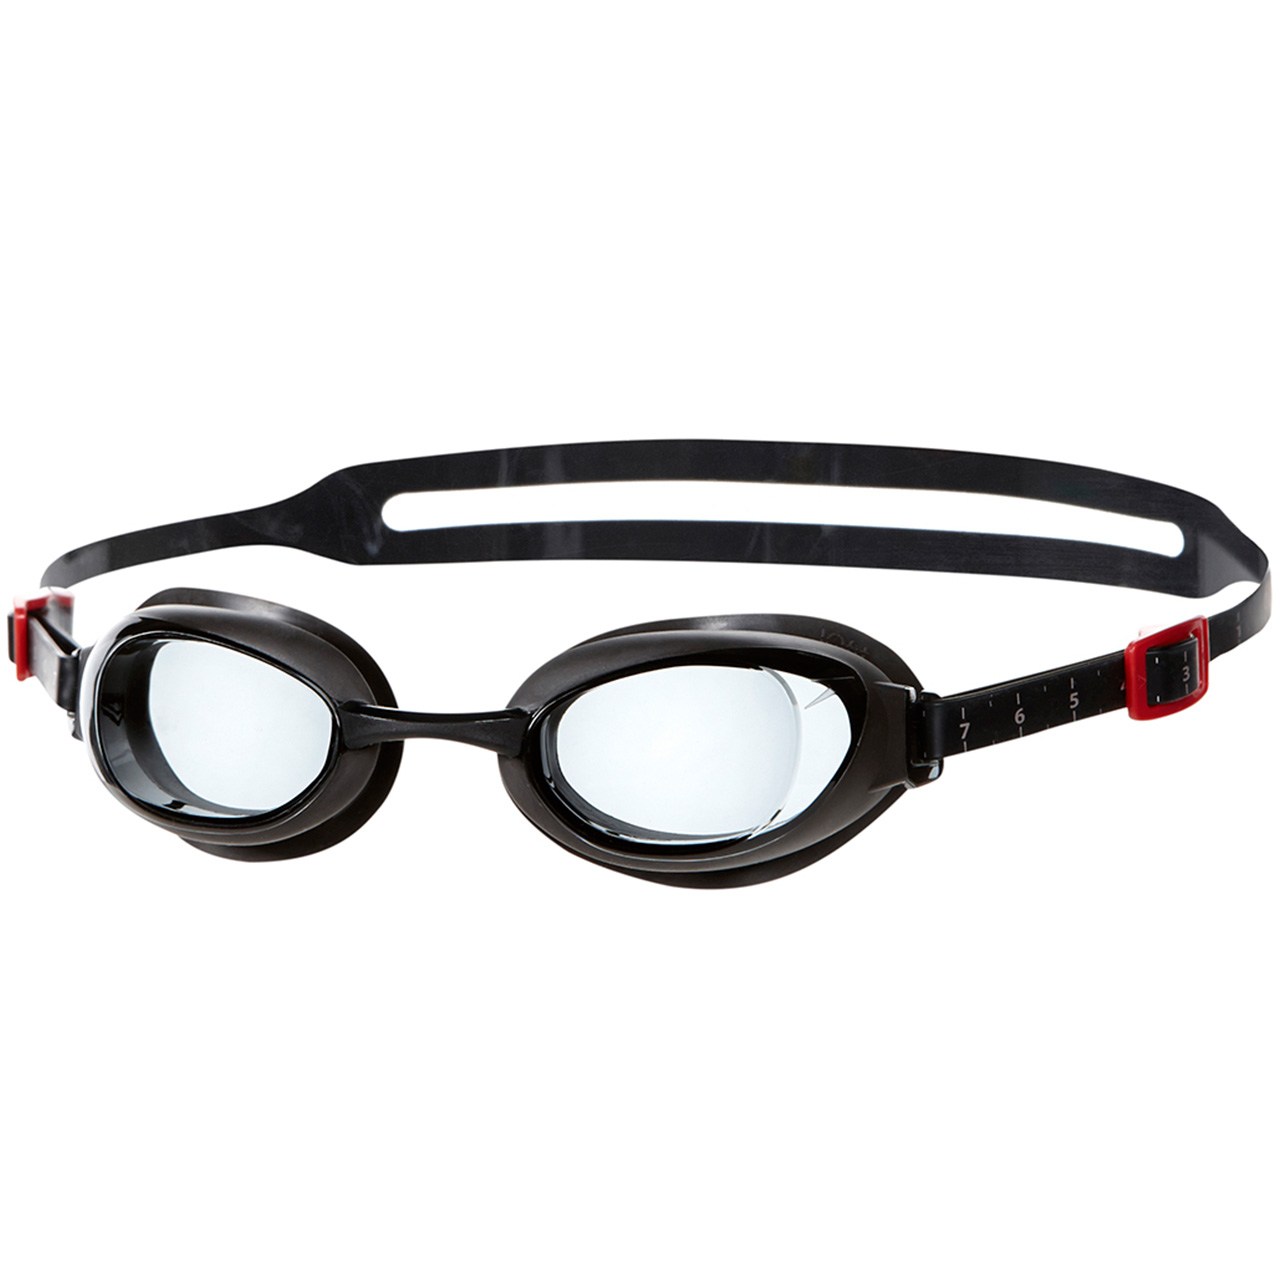 عینک شنای اسپیدو مدل Aquapure Prescription سایز 4